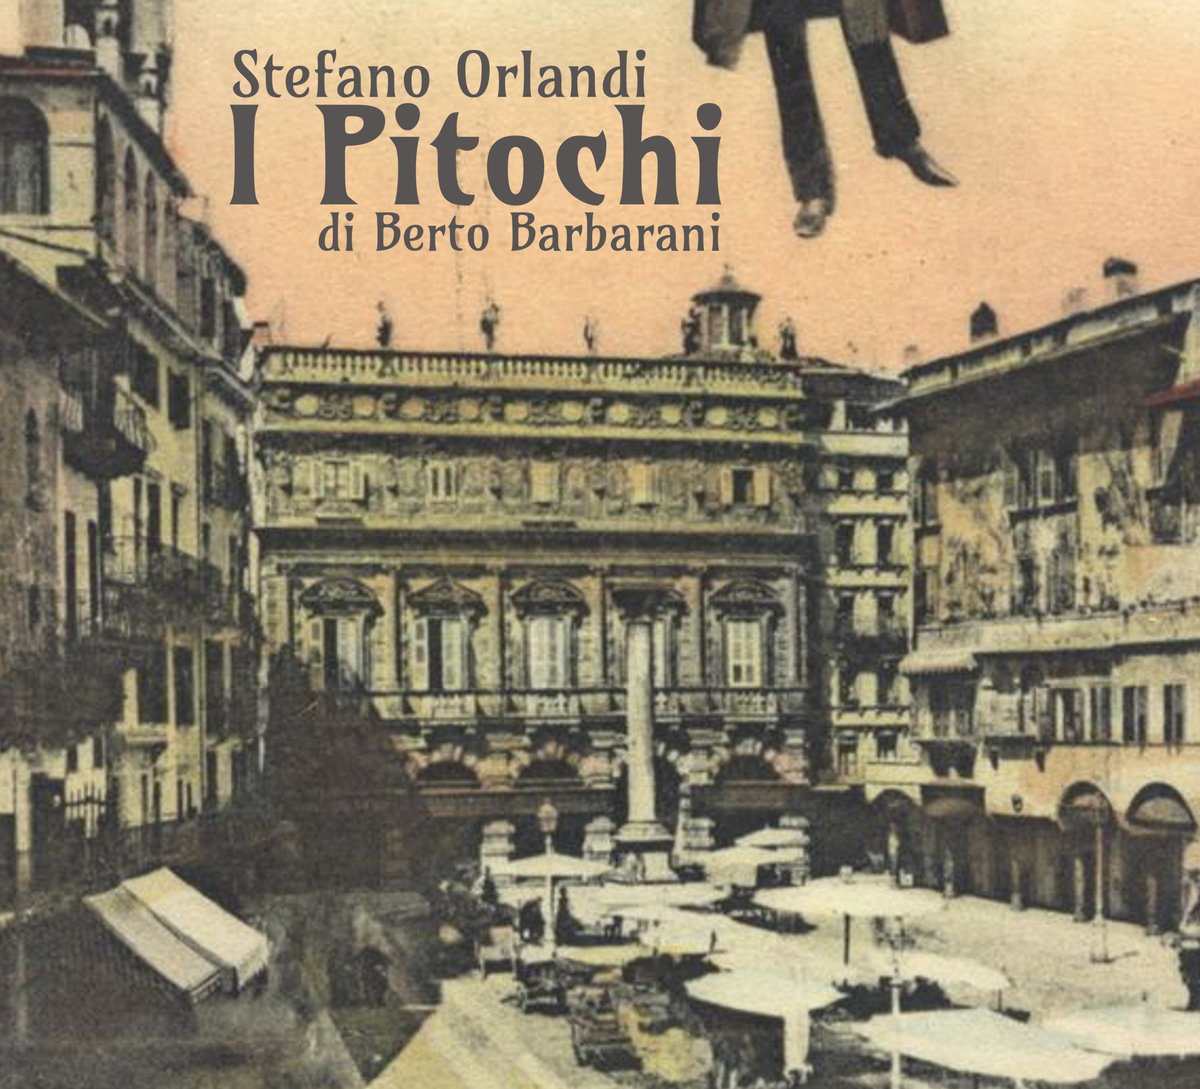 Stefano Orlandi - I pitochi